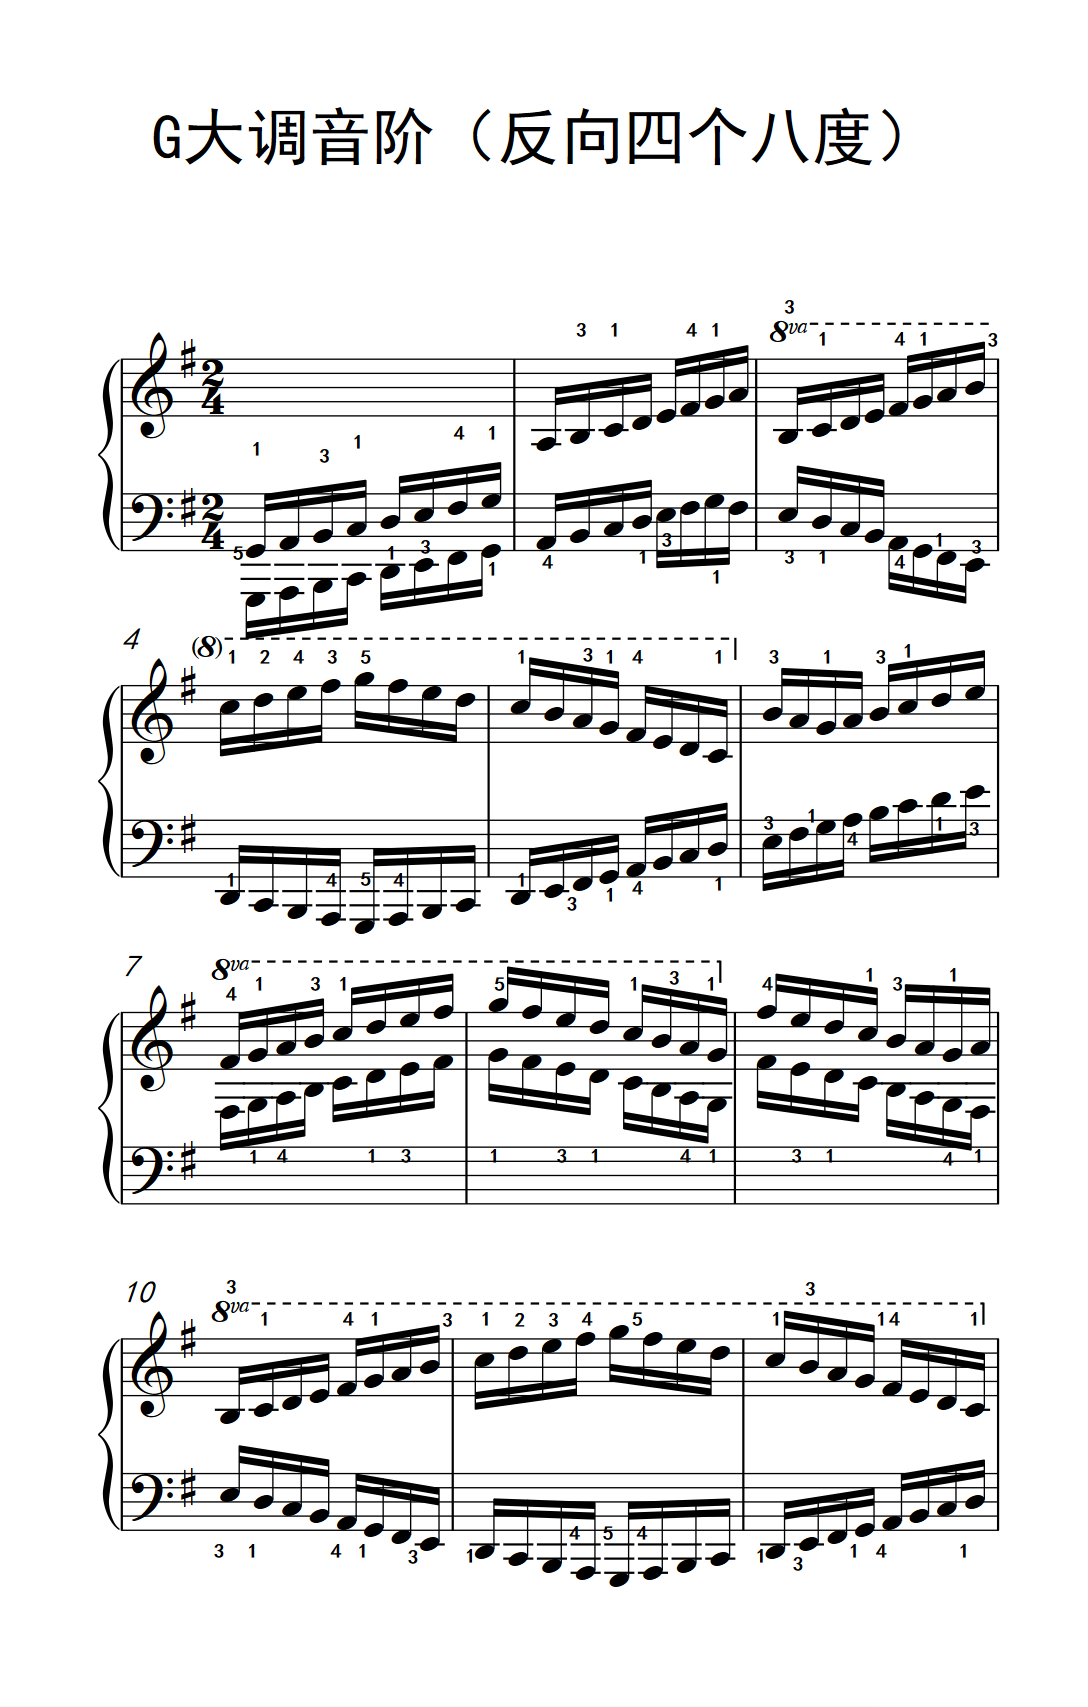 G大调音阶反向四个八度儿童钢琴练习曲